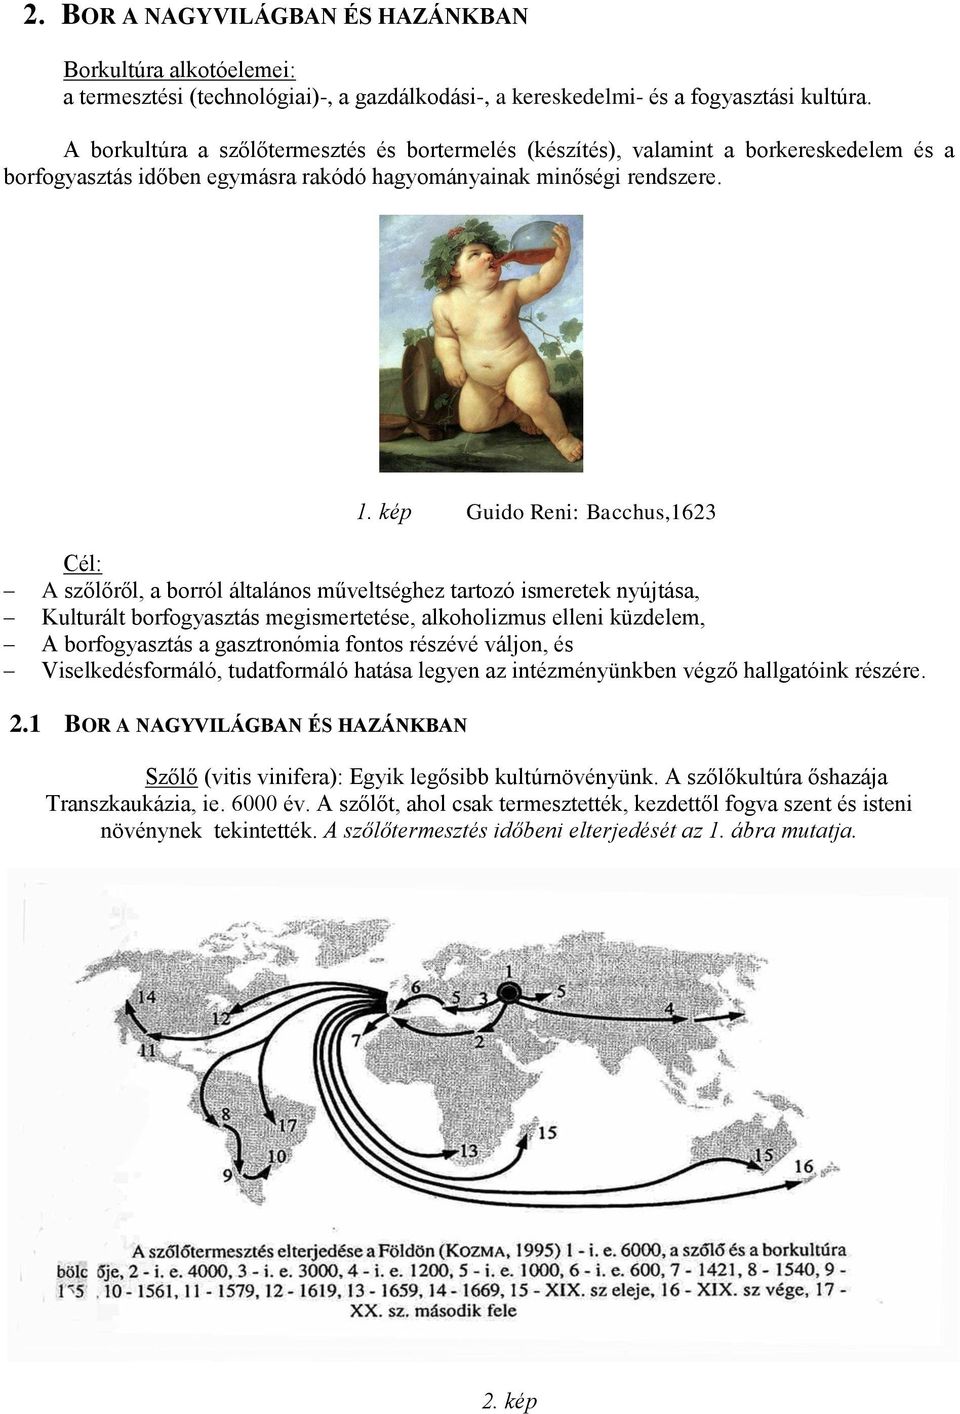 kép Guido Reni: Bacchus,1623 Cél: A szőlőről, a borról általános műveltséghez tartozó ismeretek nyújtása, Kulturált borfogyasztás megismertetése, alkoholizmus elleni küzdelem, A borfogyasztás a